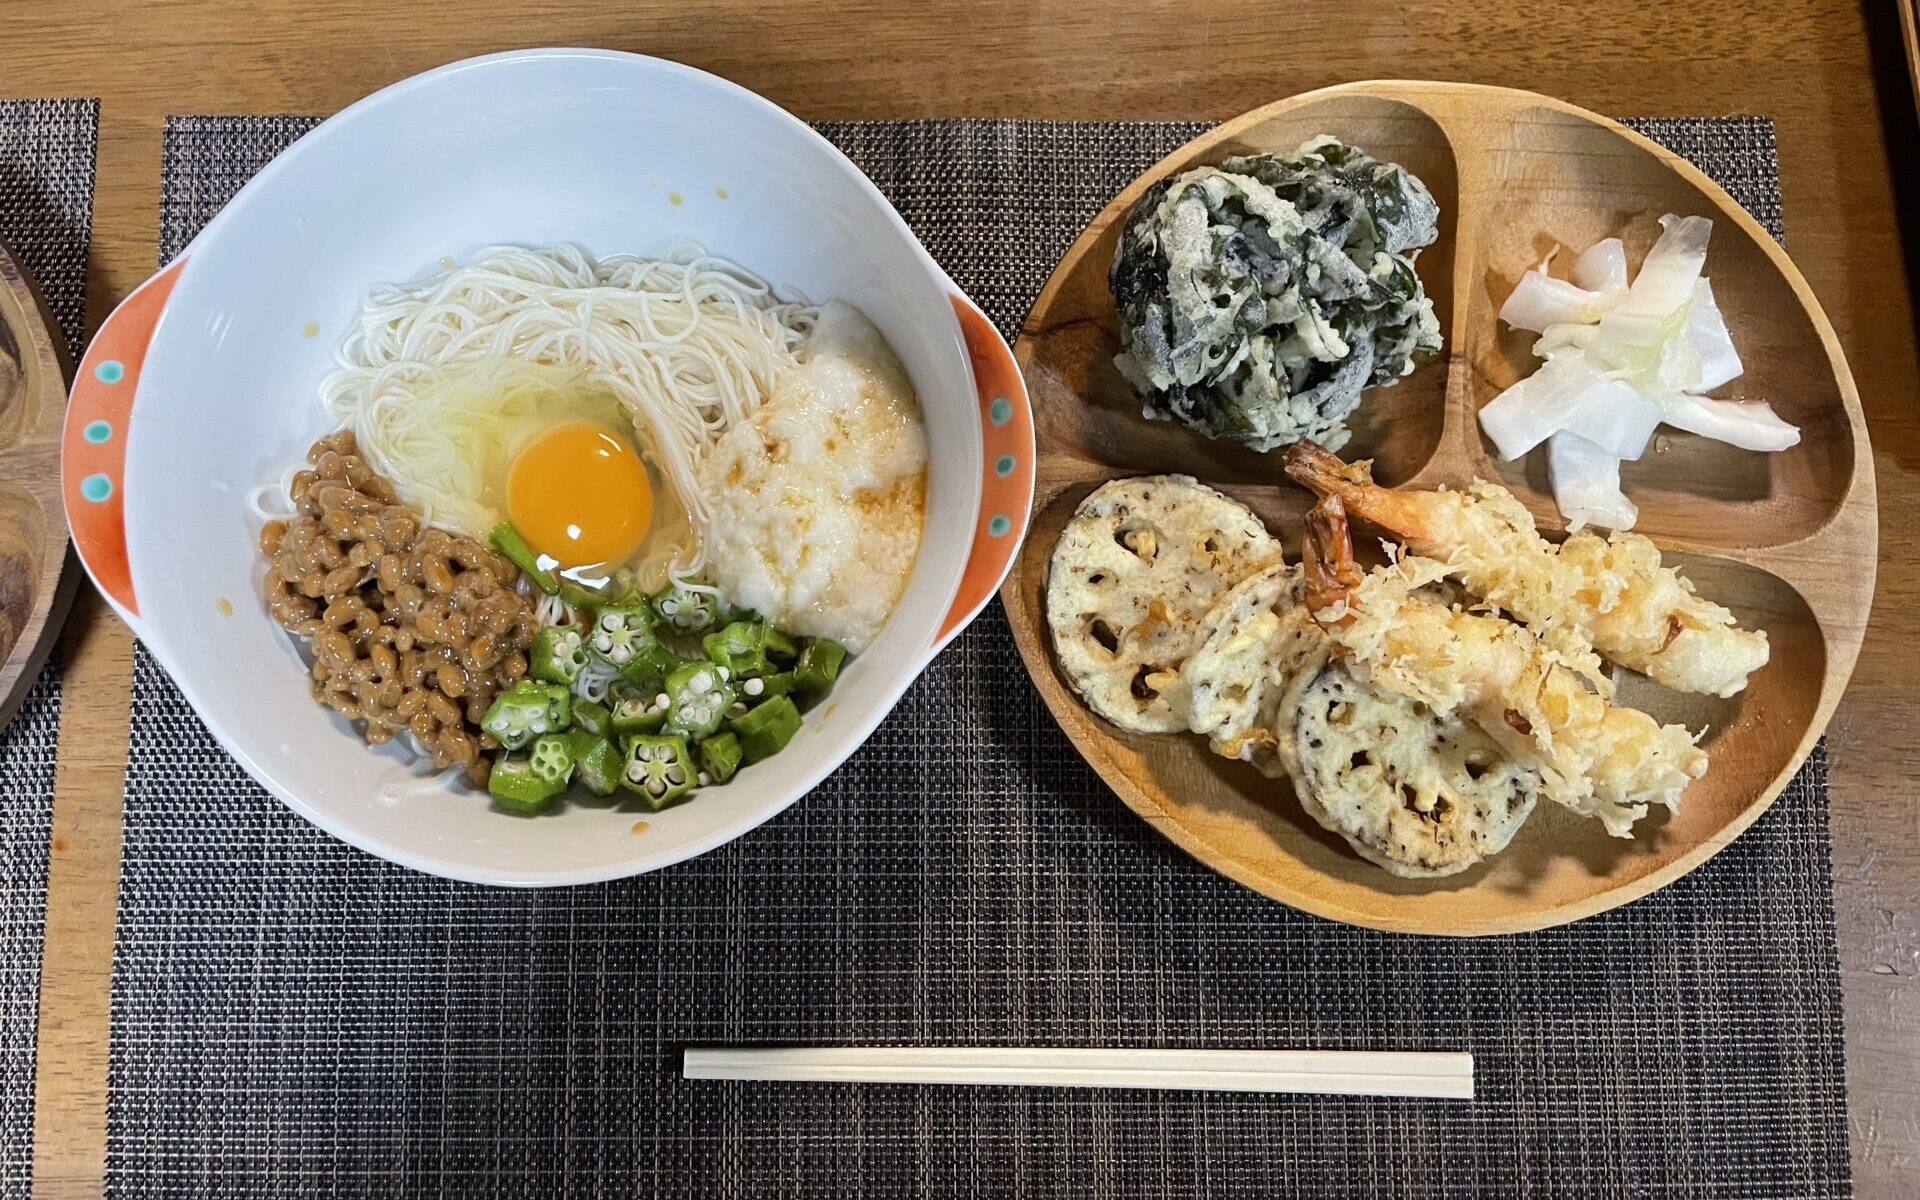 オクラ、納豆、とろろのねばとろ素麺と天ぷらの盛り合わせ